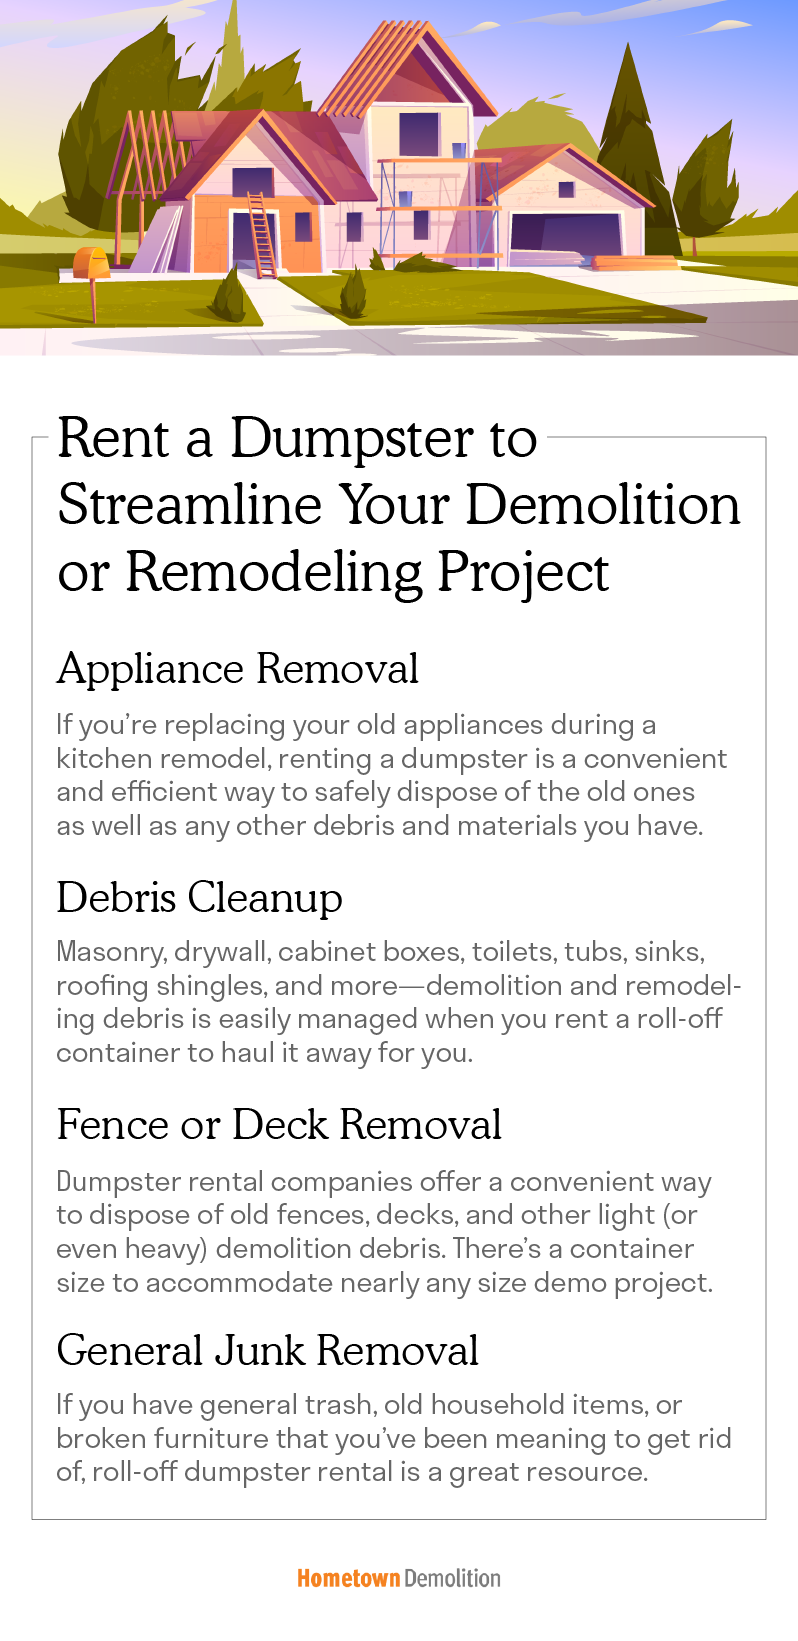 dumpster rental for demolition and remodeling